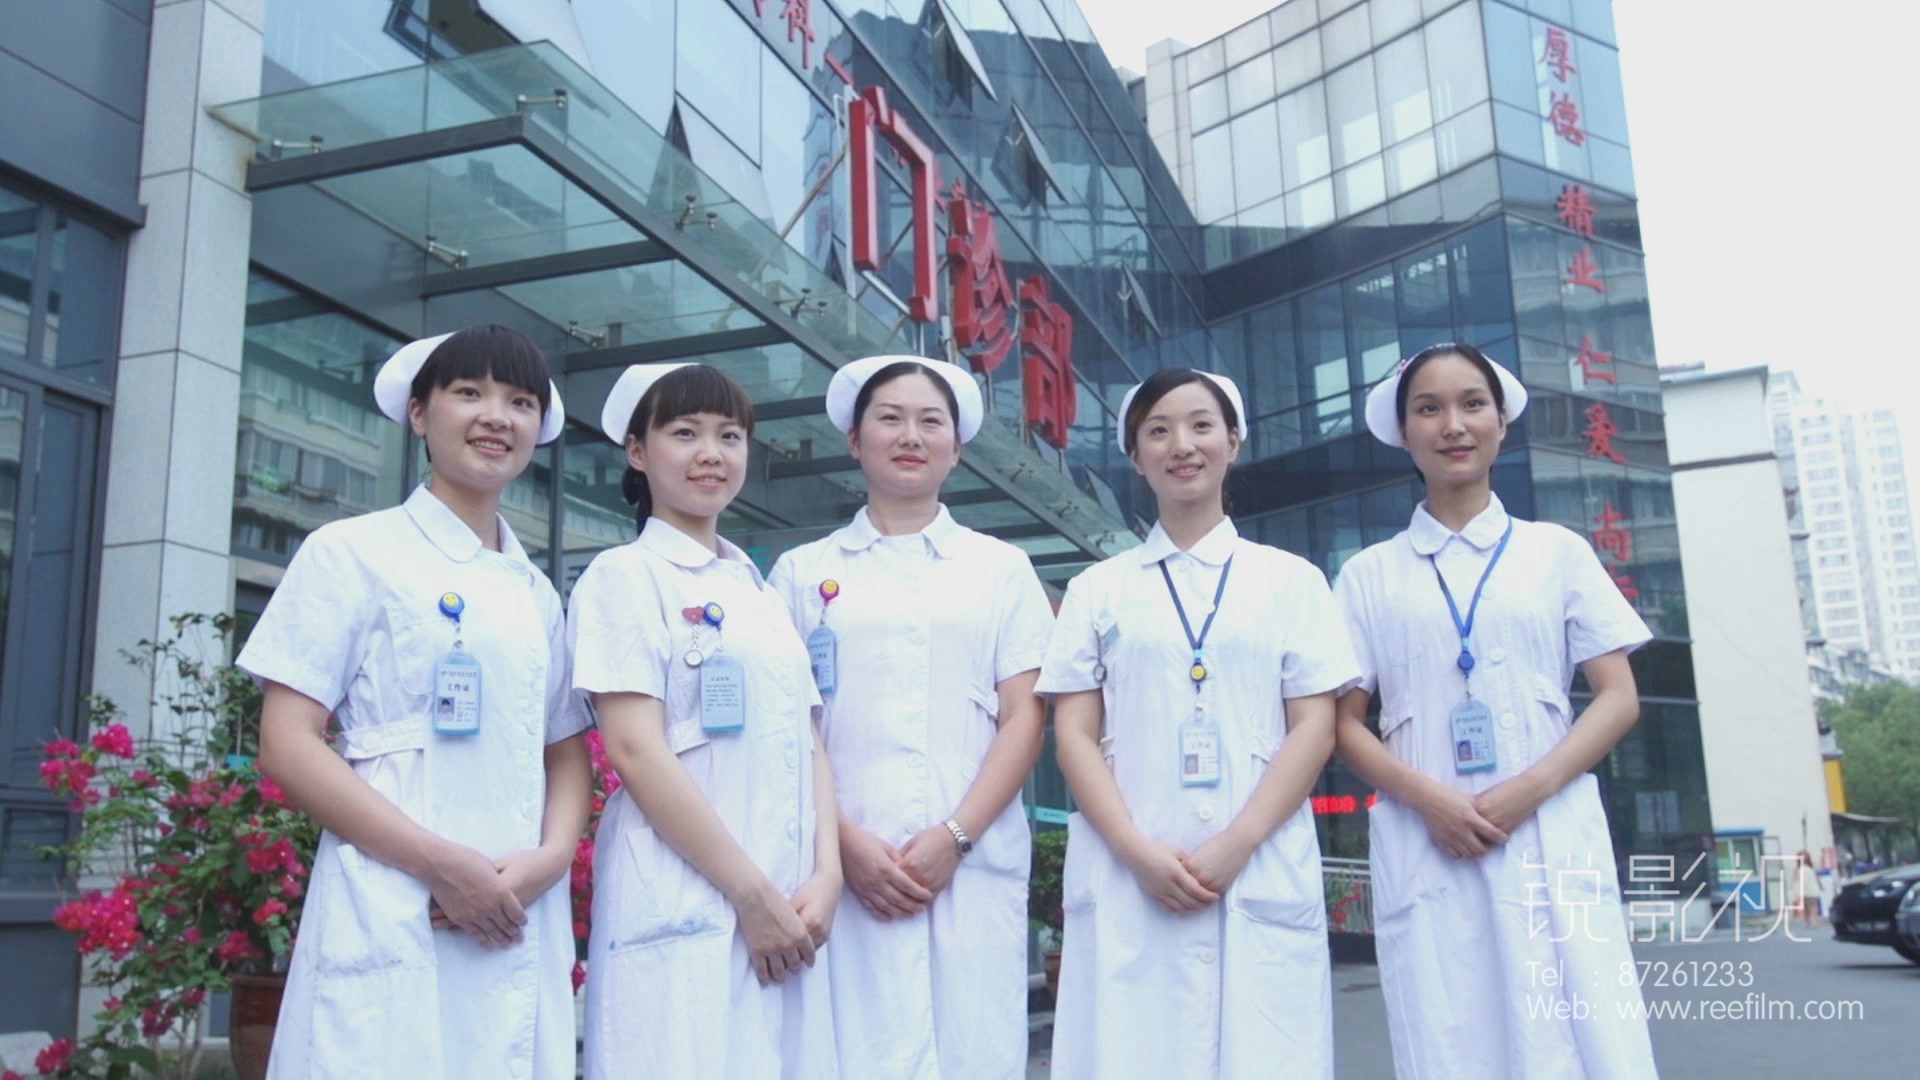 武汉医院宣传片制作哪家公司更专业